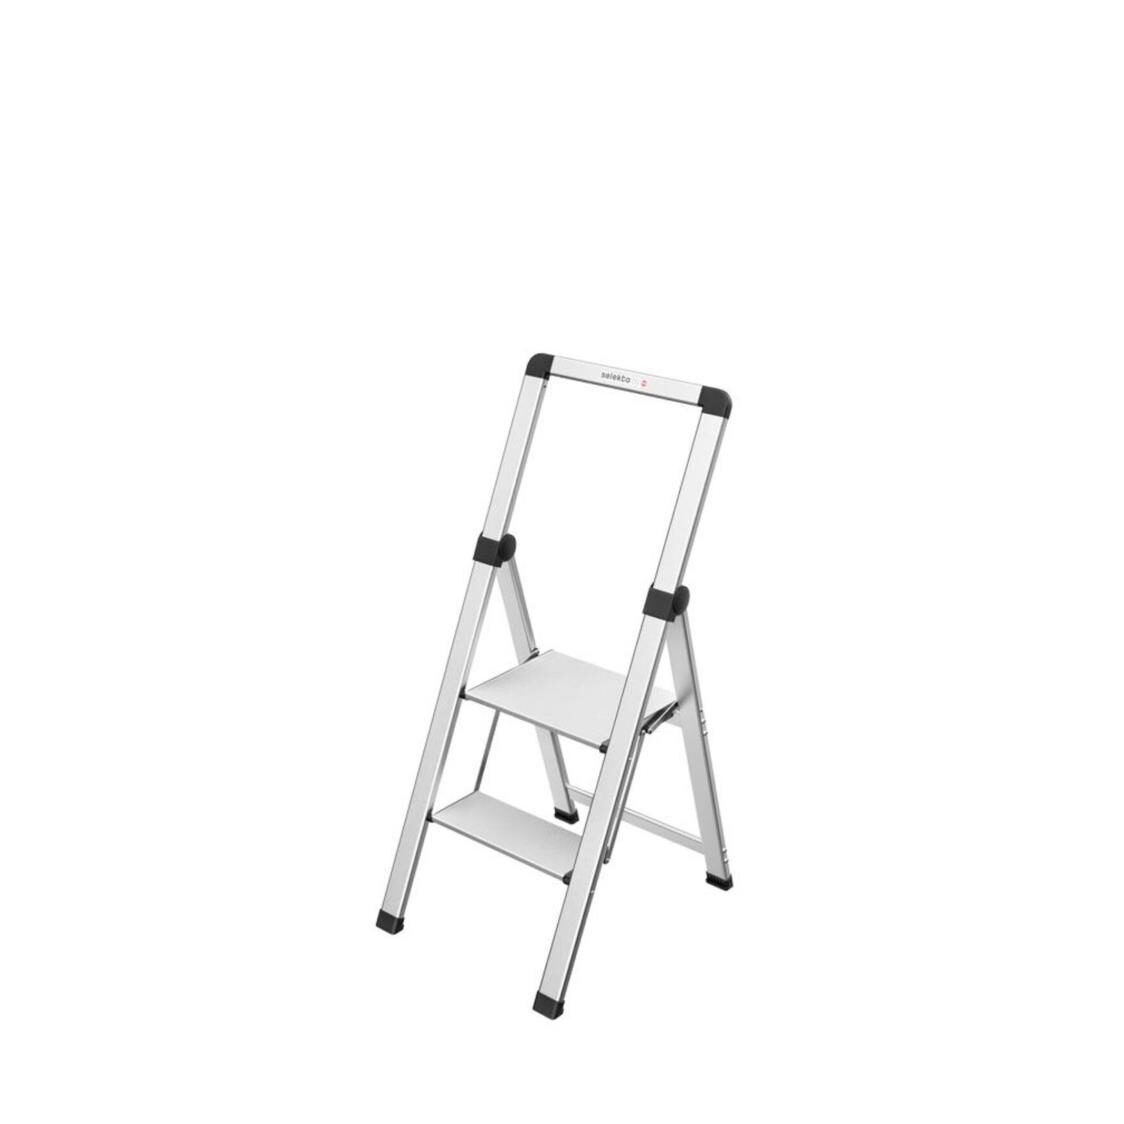 Hailo DK40 Basicline 2 Step Stool White Ladder